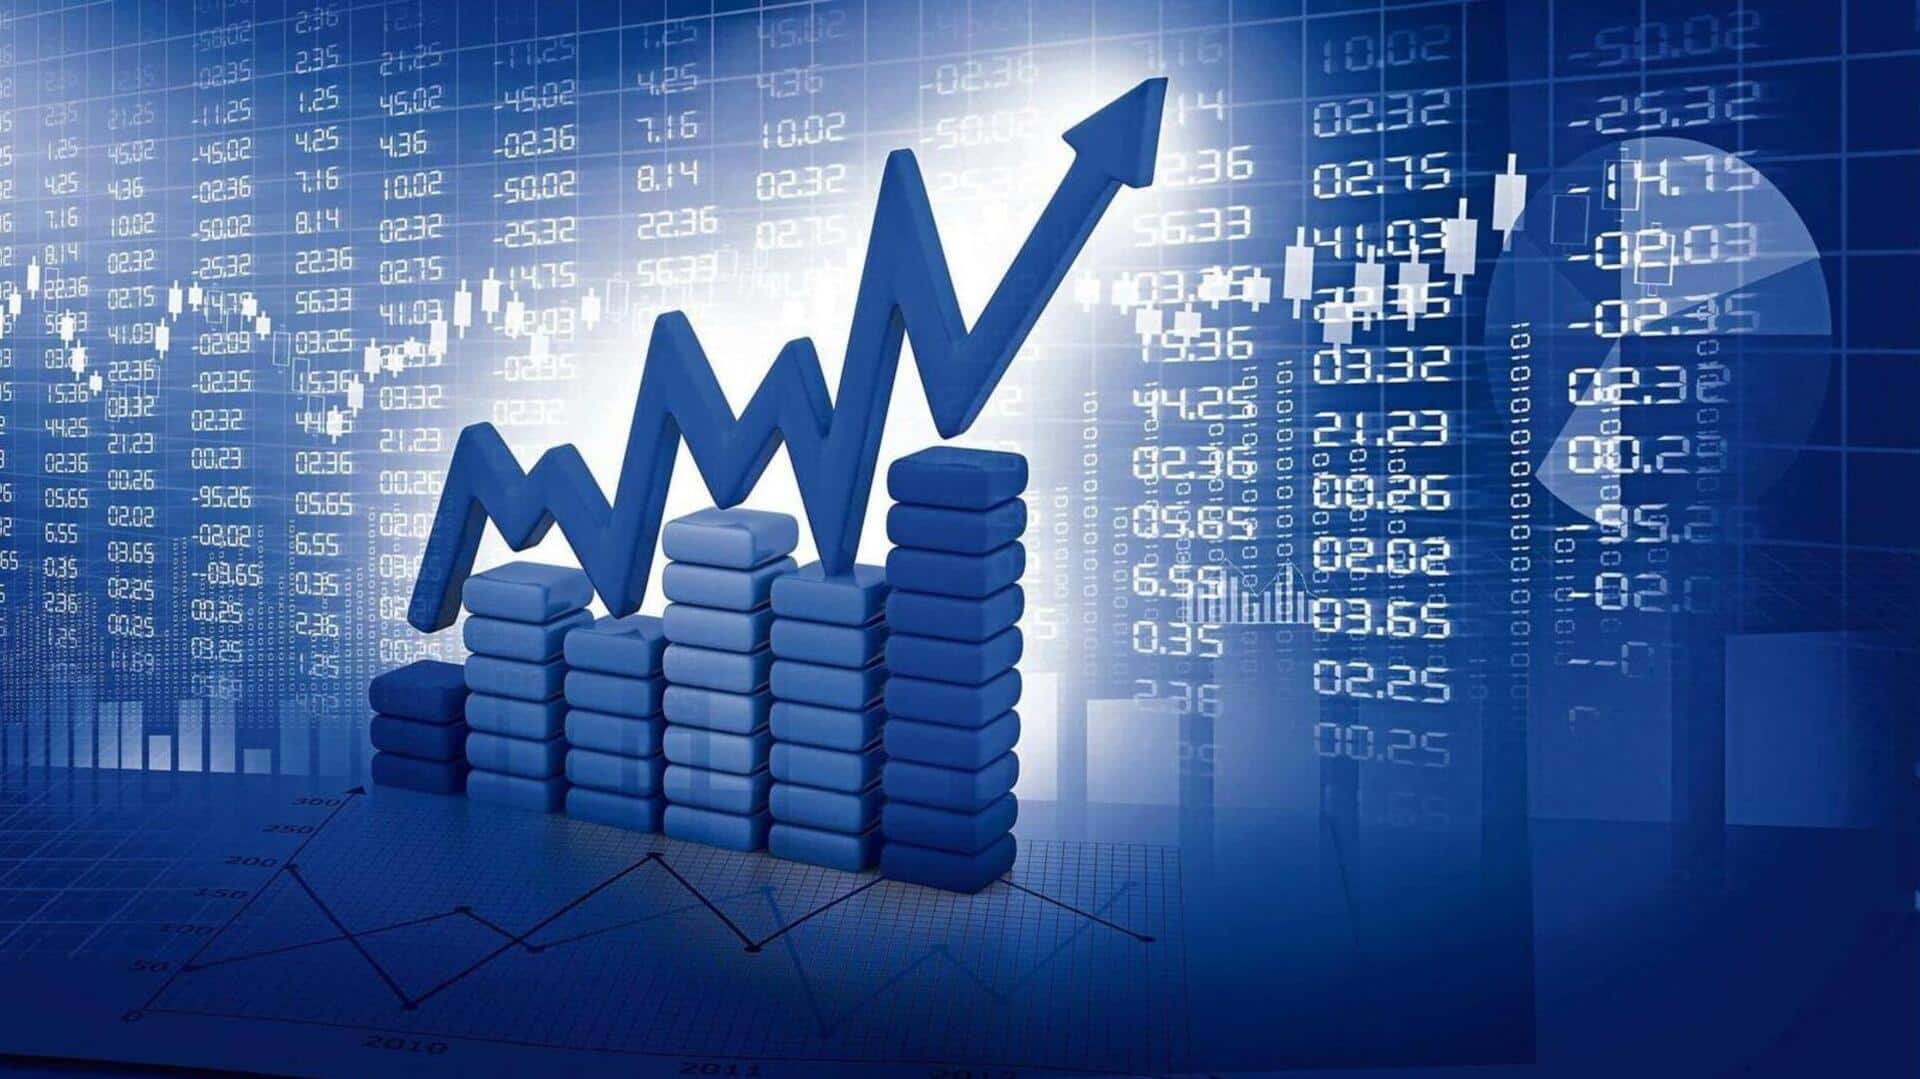 शेयर बाजार में तेजी जारी, सेंसेक्स पहली बार 69,000 पार